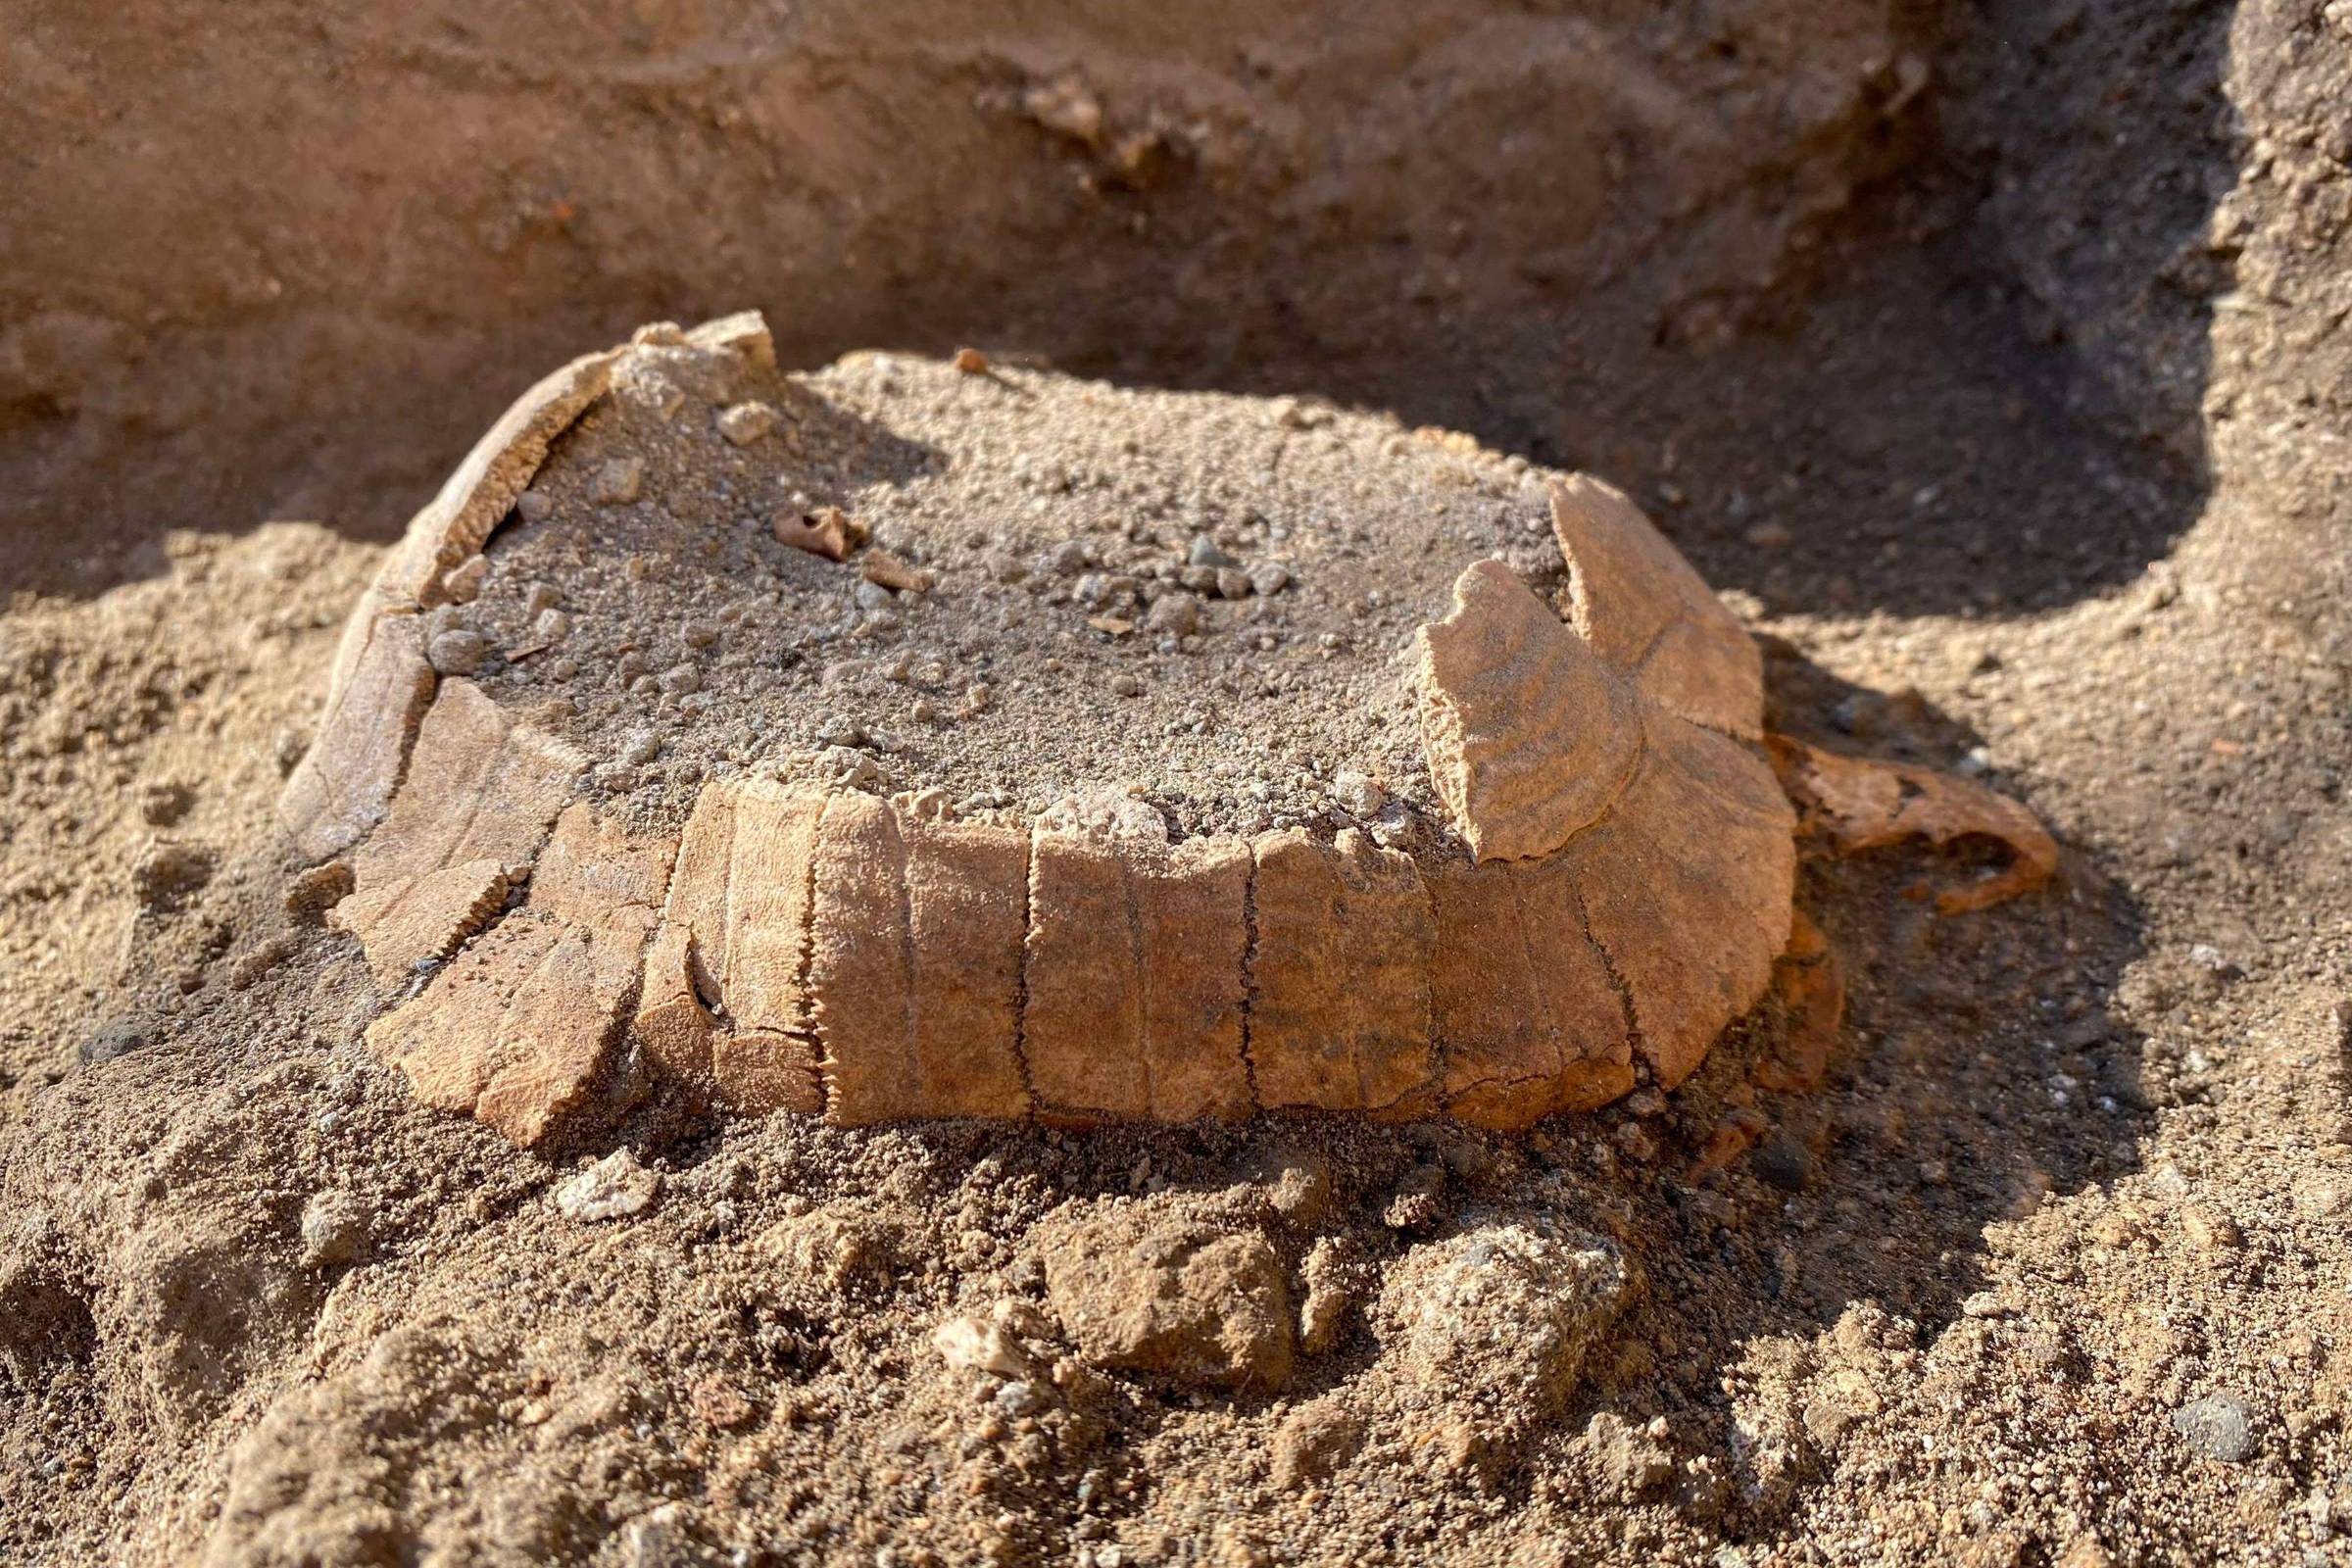 Descubren restos de tortuga en las ruinas de Pompeya – 25/06/2022 – Ciencia